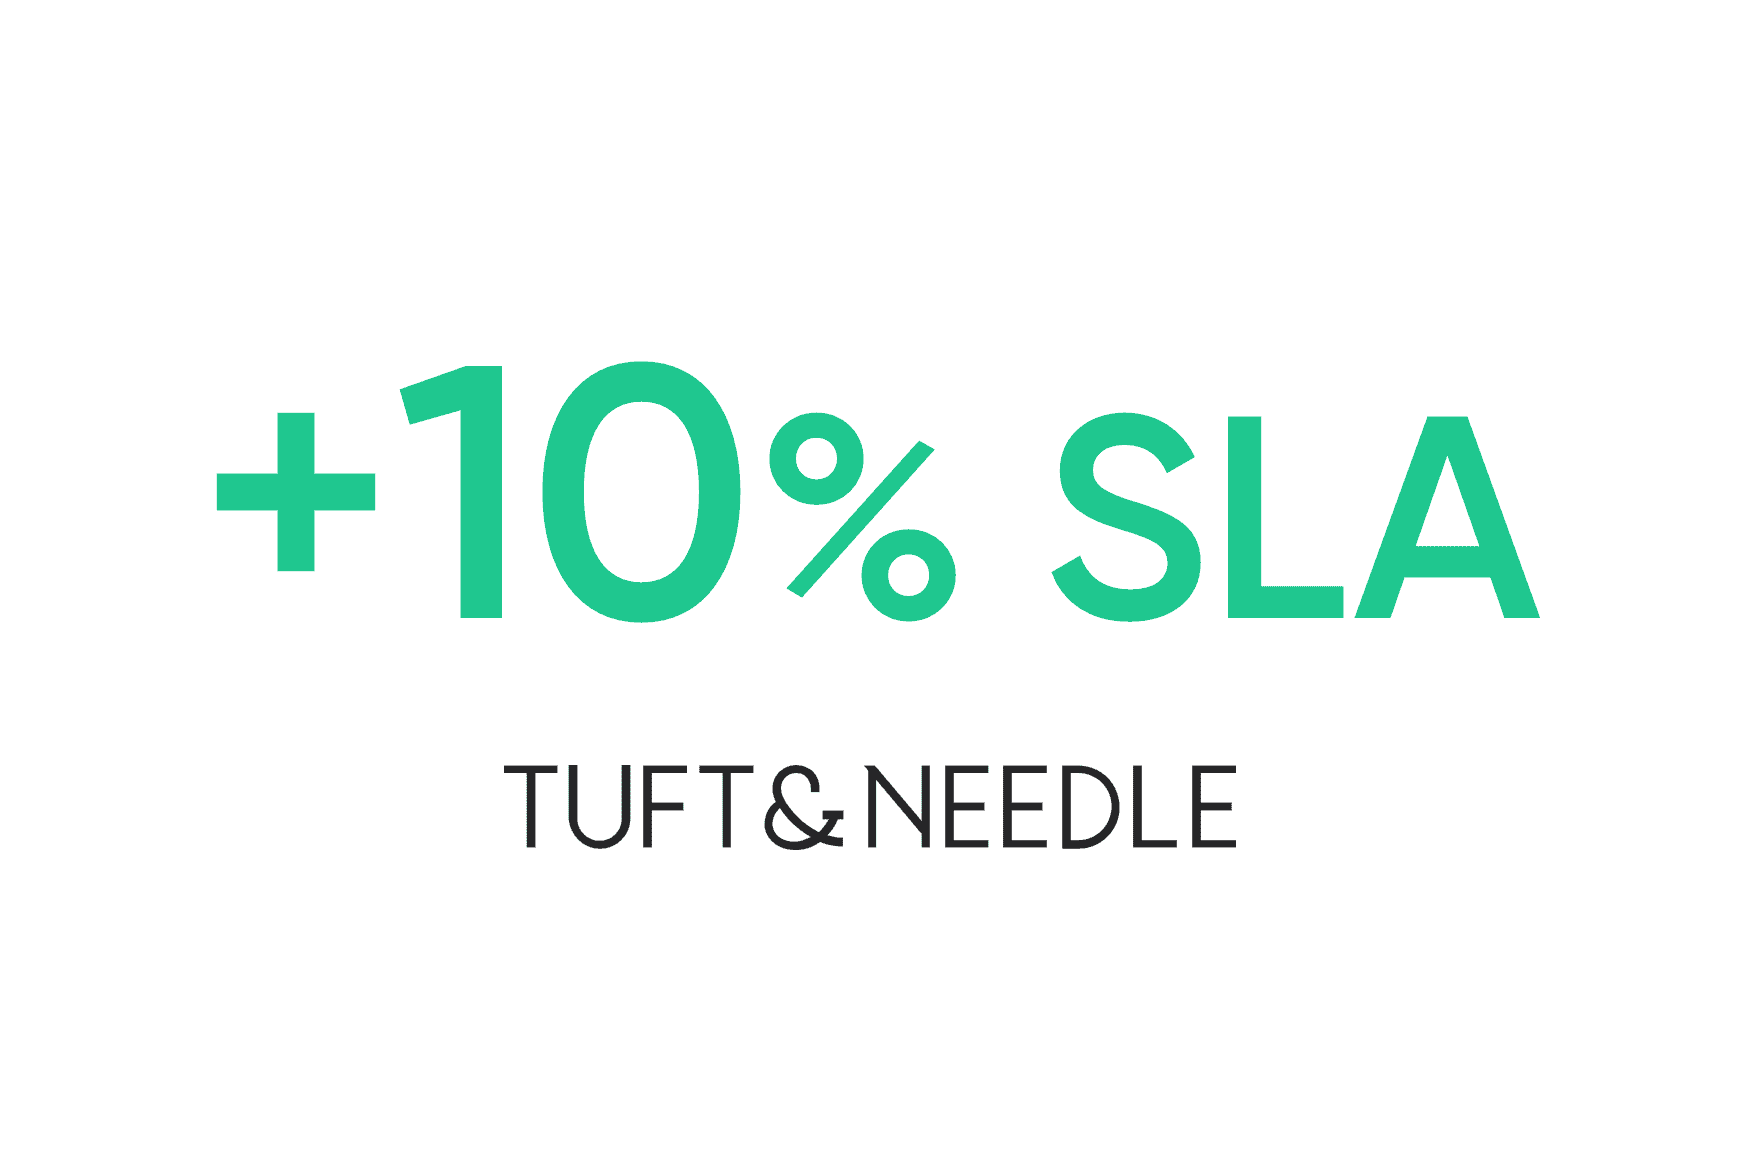 Tuft & Needle: aumento del 10 % en el ANS